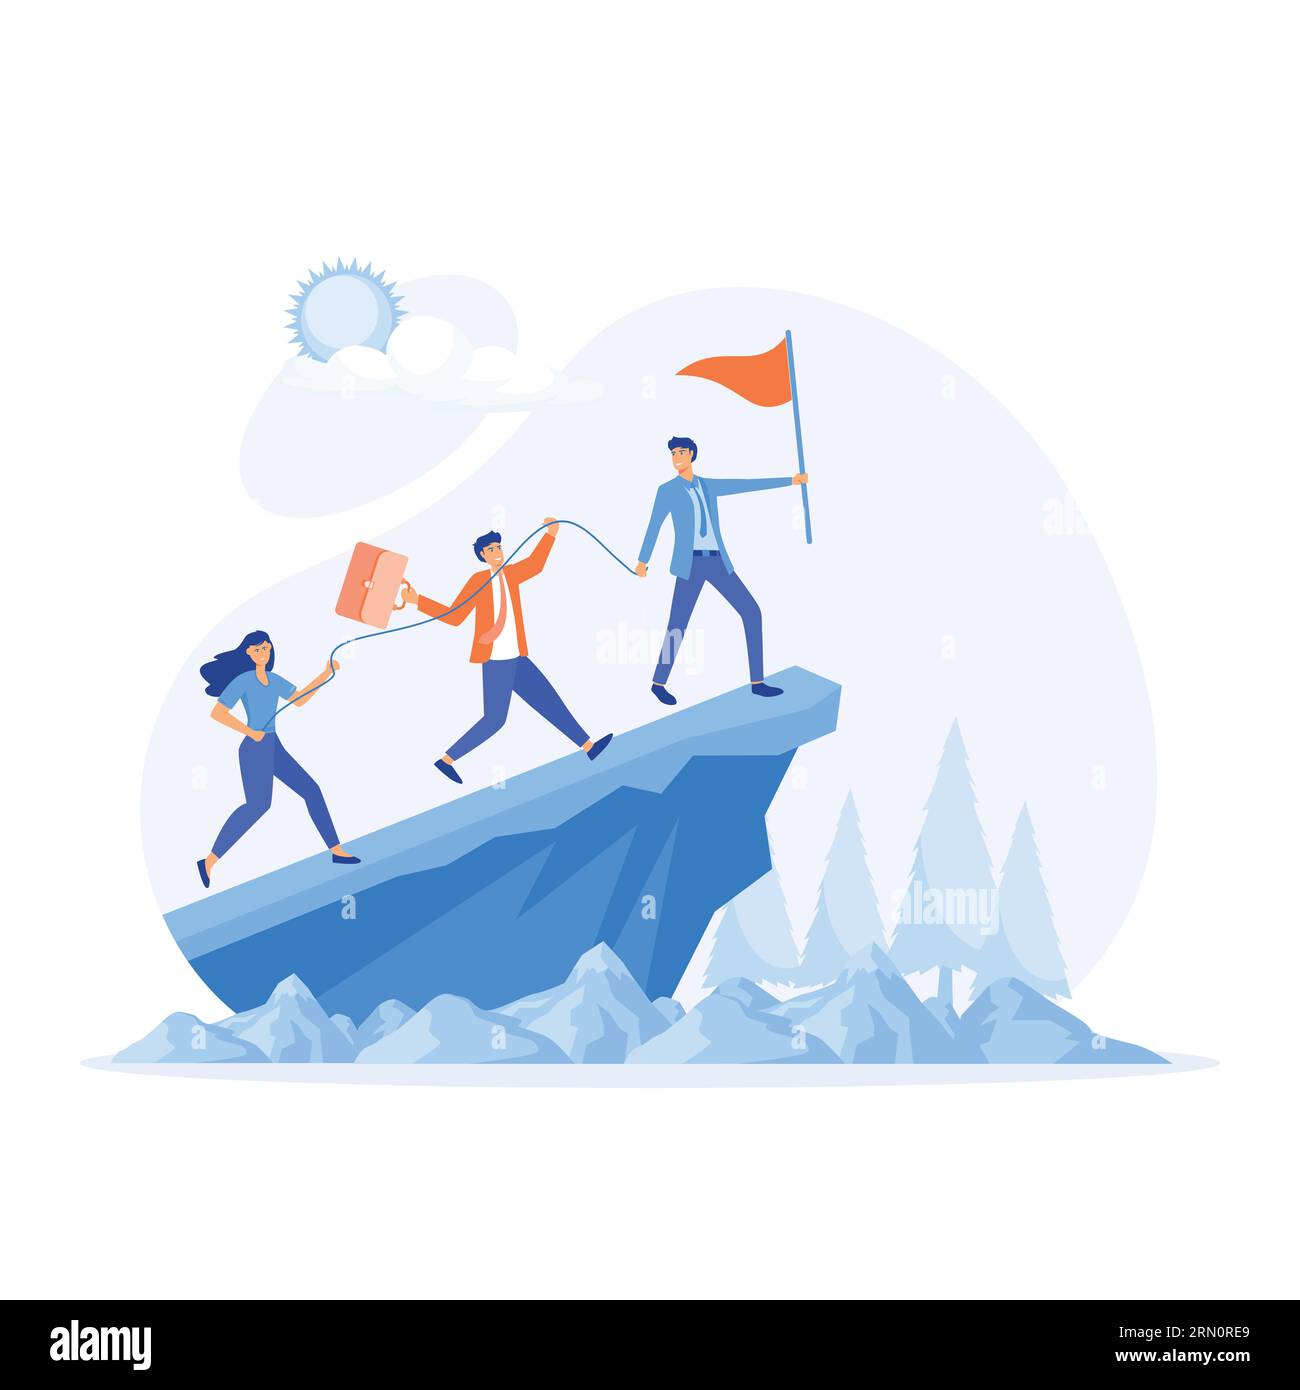 Geschäftskonzept von Führung und Teamarbeit, Leader hilft dem Team, die Klippe zu erklimmen und das Ziel zu erreichen, flache Vektor moderne Illustration Stock Vektor